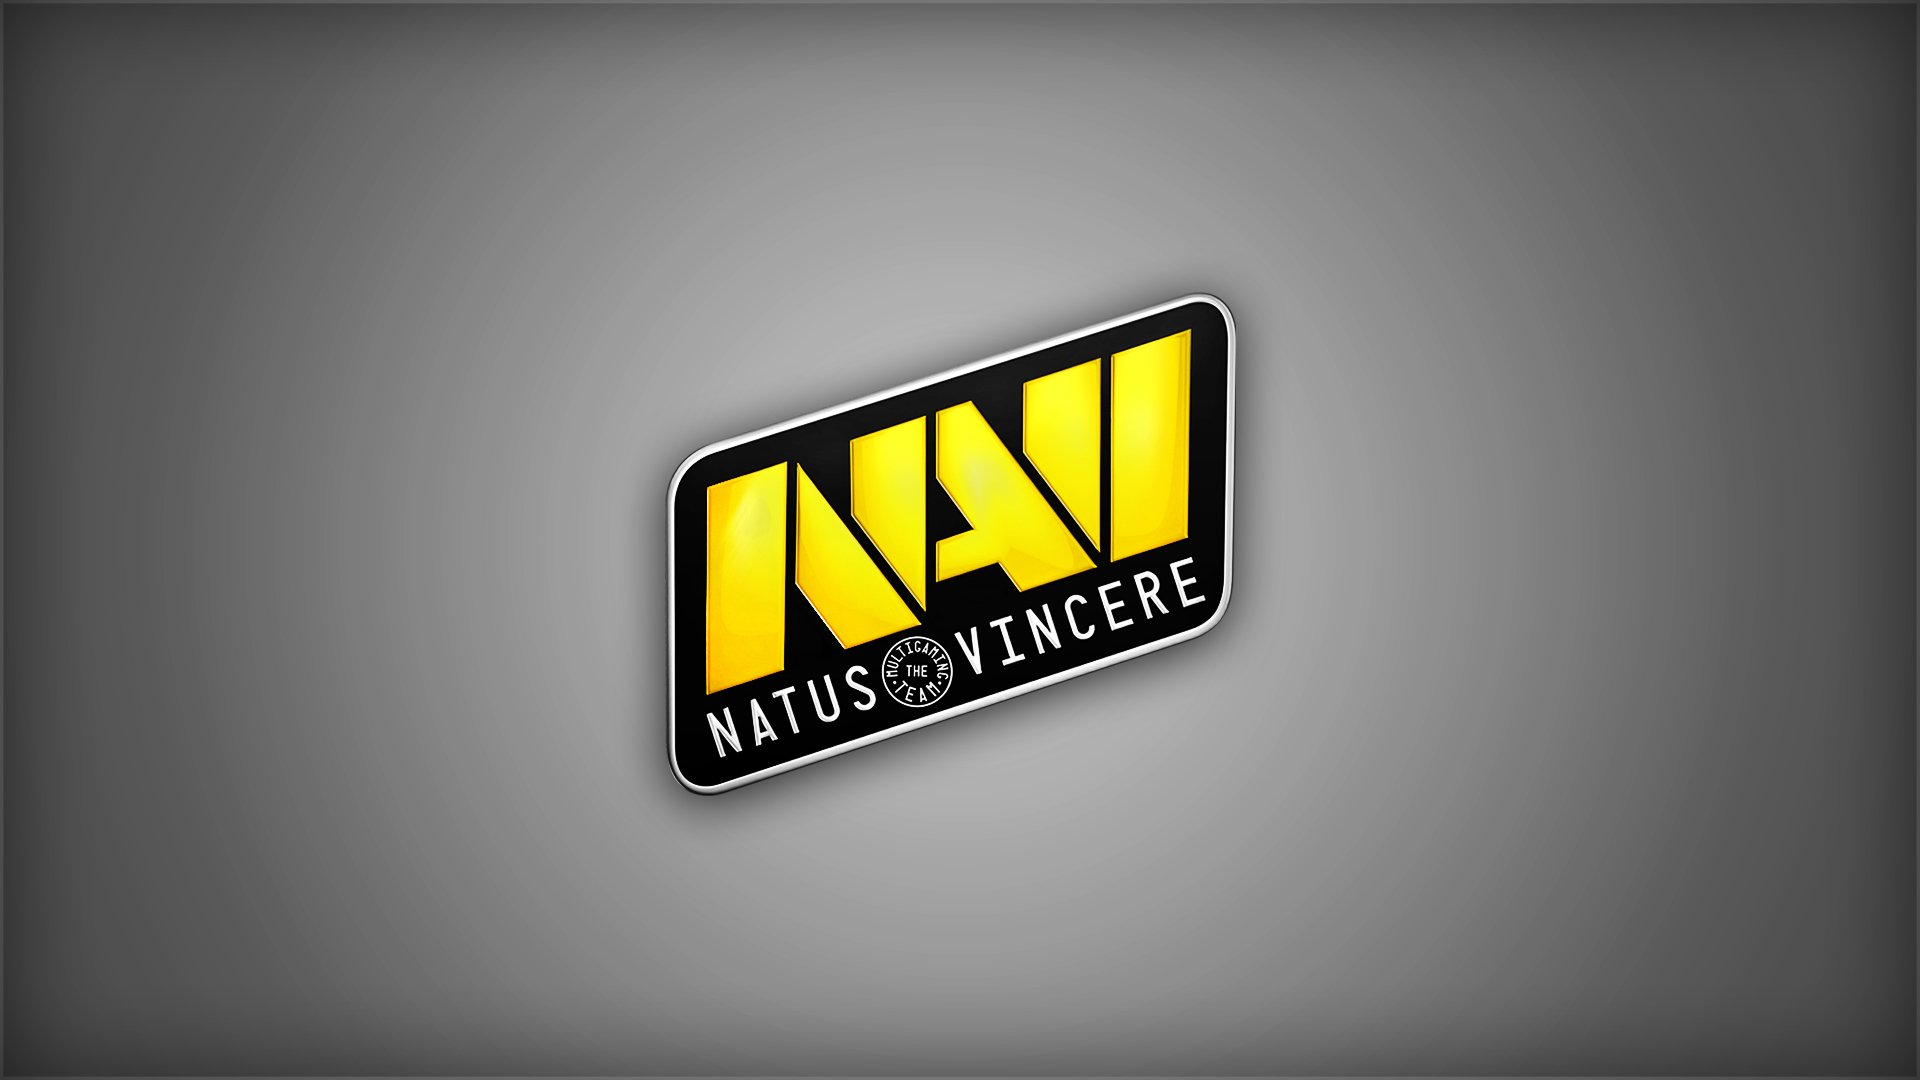 Natus Vincere стала самой популярной командой на мейджорах по CS:GO с 2017-го по 2023 год